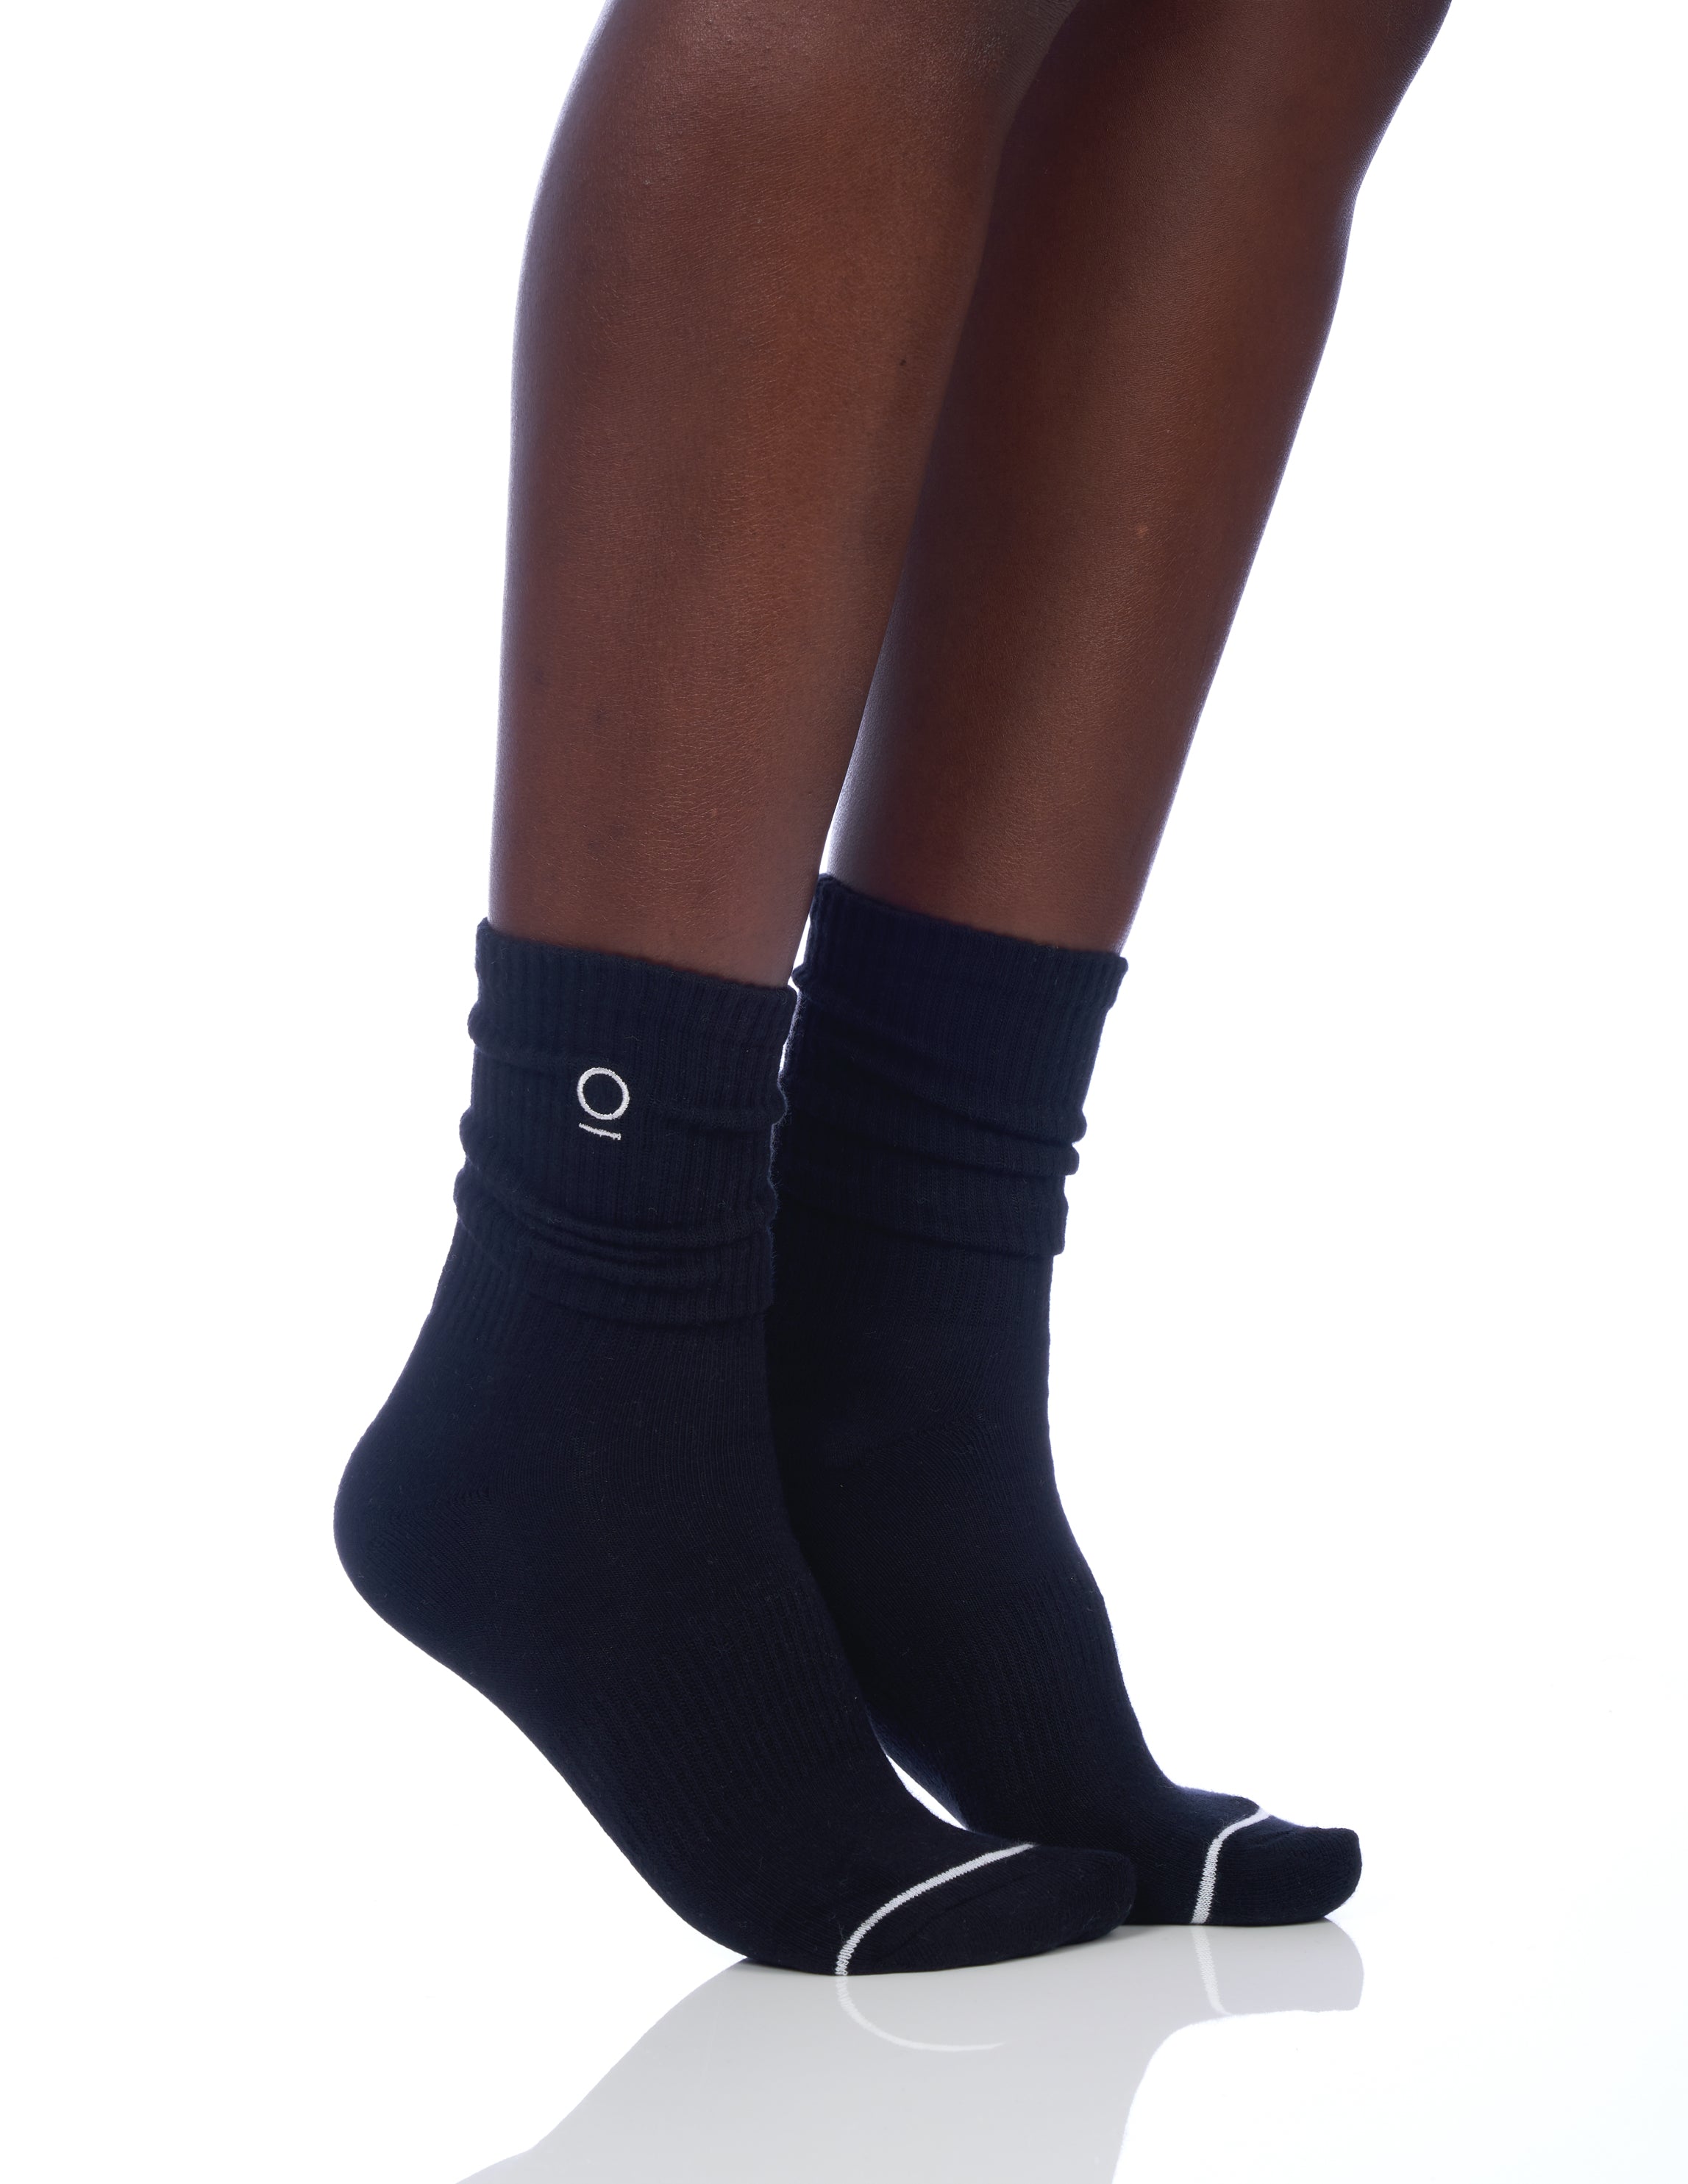 F9 Grip socks - Black